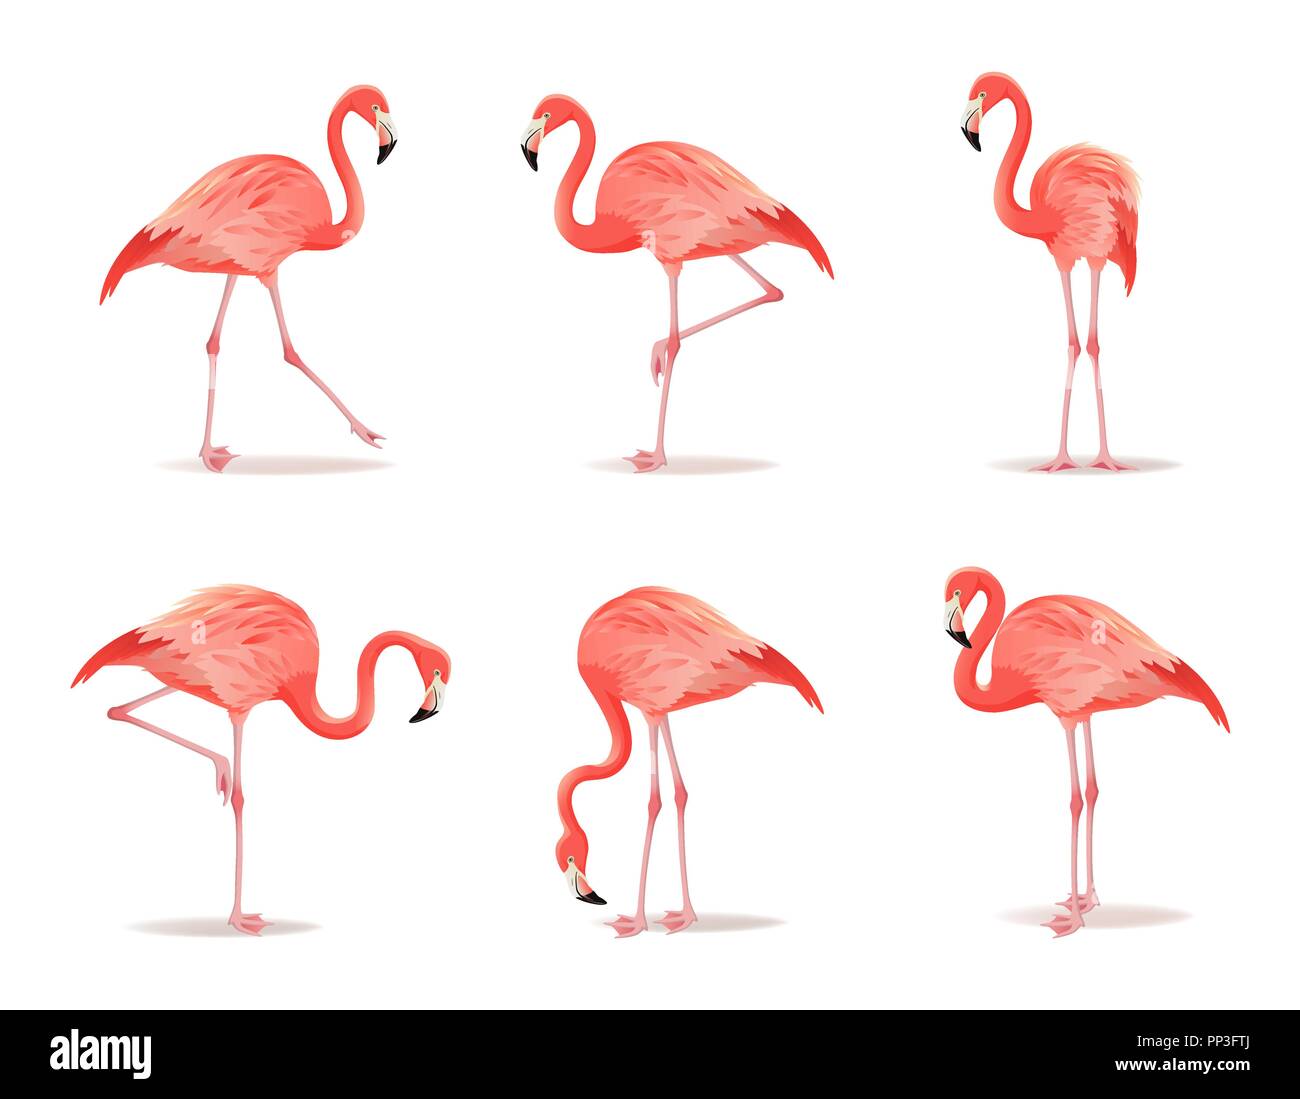 Flamant rose et rouge, illustration vectorielle. Cool oiseau exotique dans différentes poses décoratif conception collection d'éléments. Flamingo isolé sur fond blanc Illustration de Vecteur